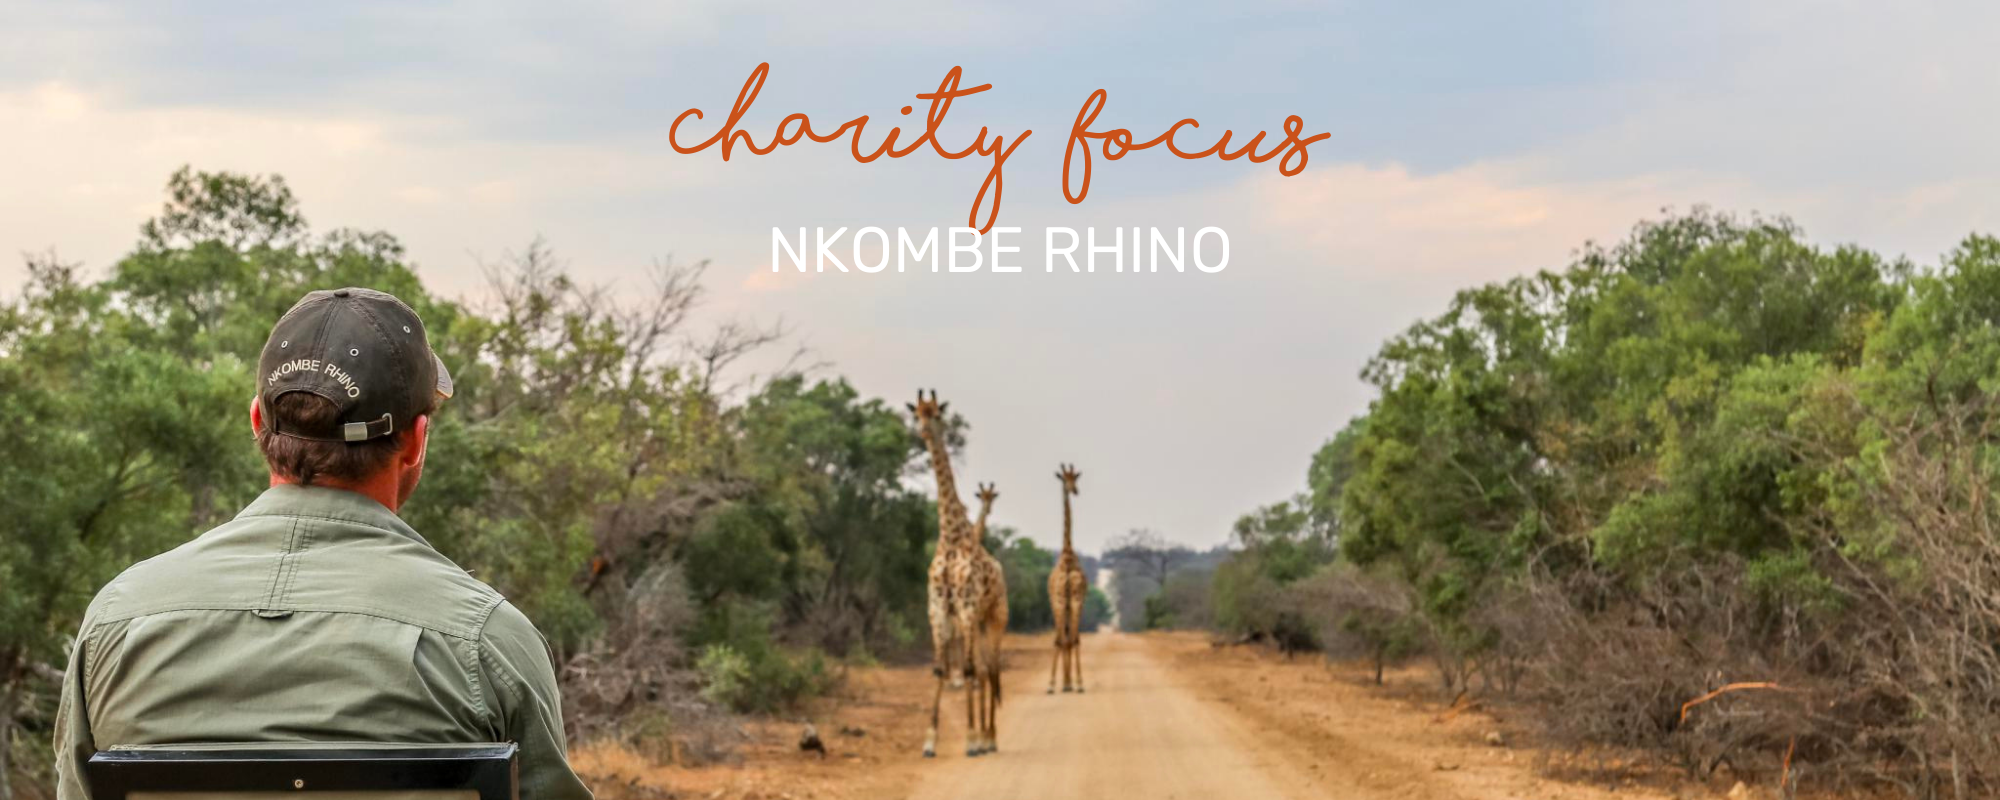 CHARITY FOCUS: NKOMBE RHINO